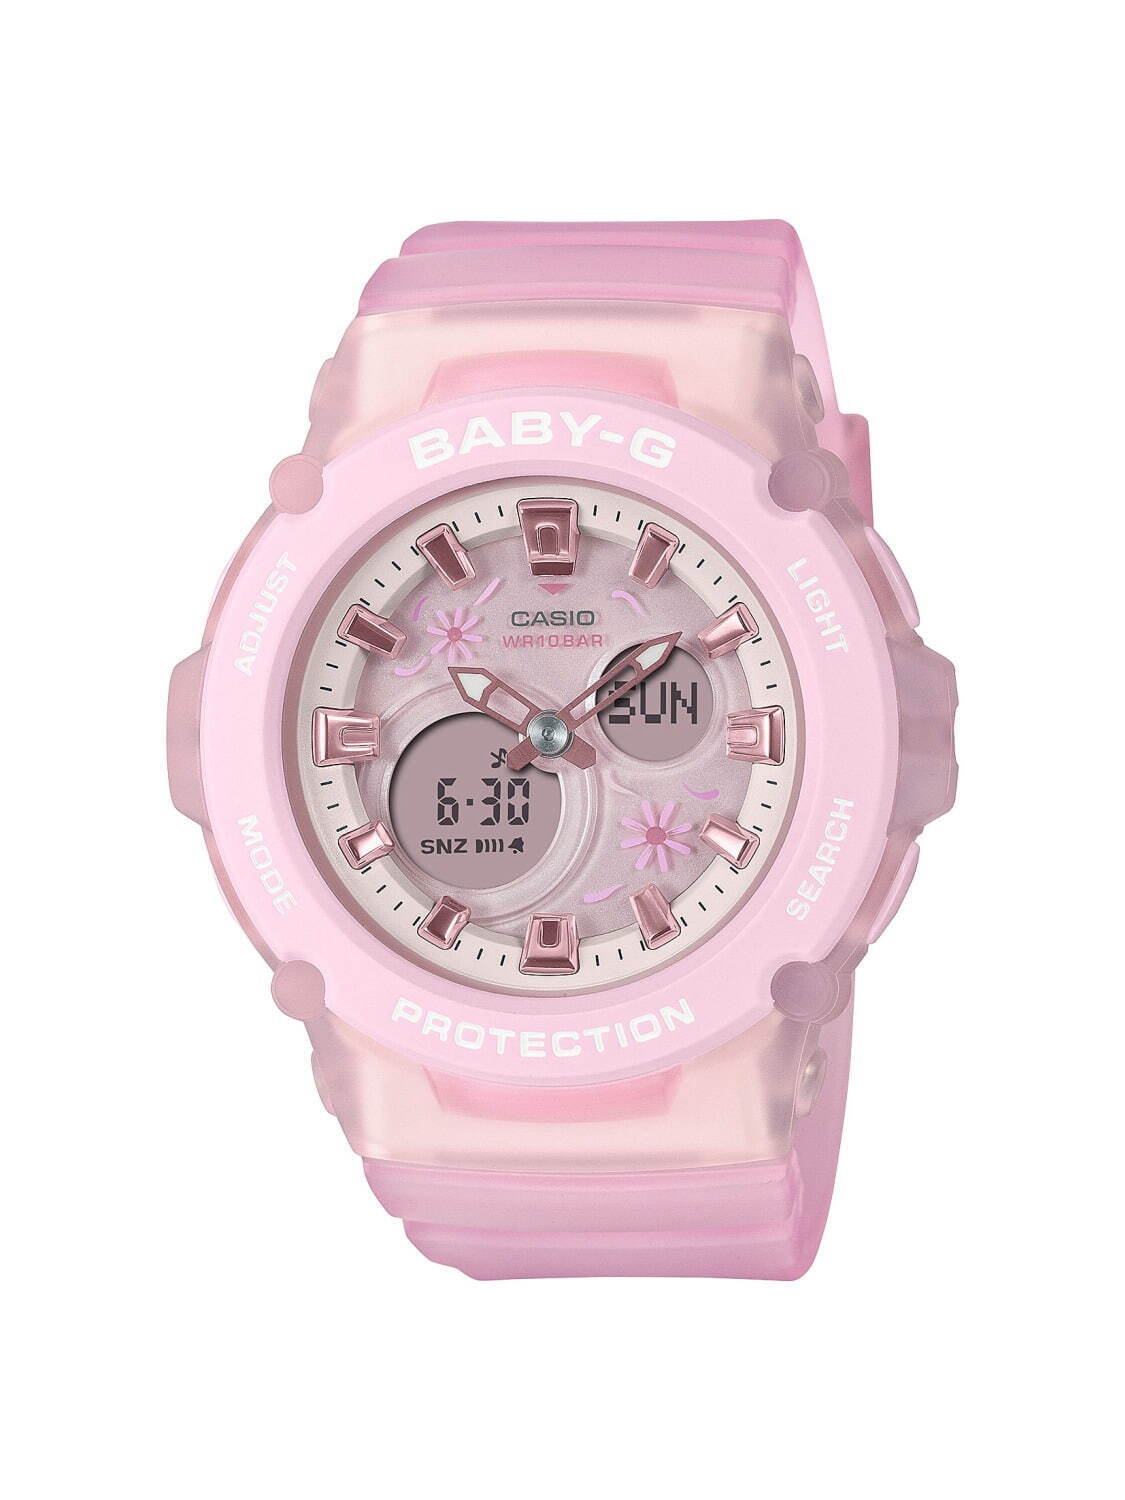 BABY-G「コスモスピンク」の腕時計、“ビーチ”や“フラワー”モチーフの